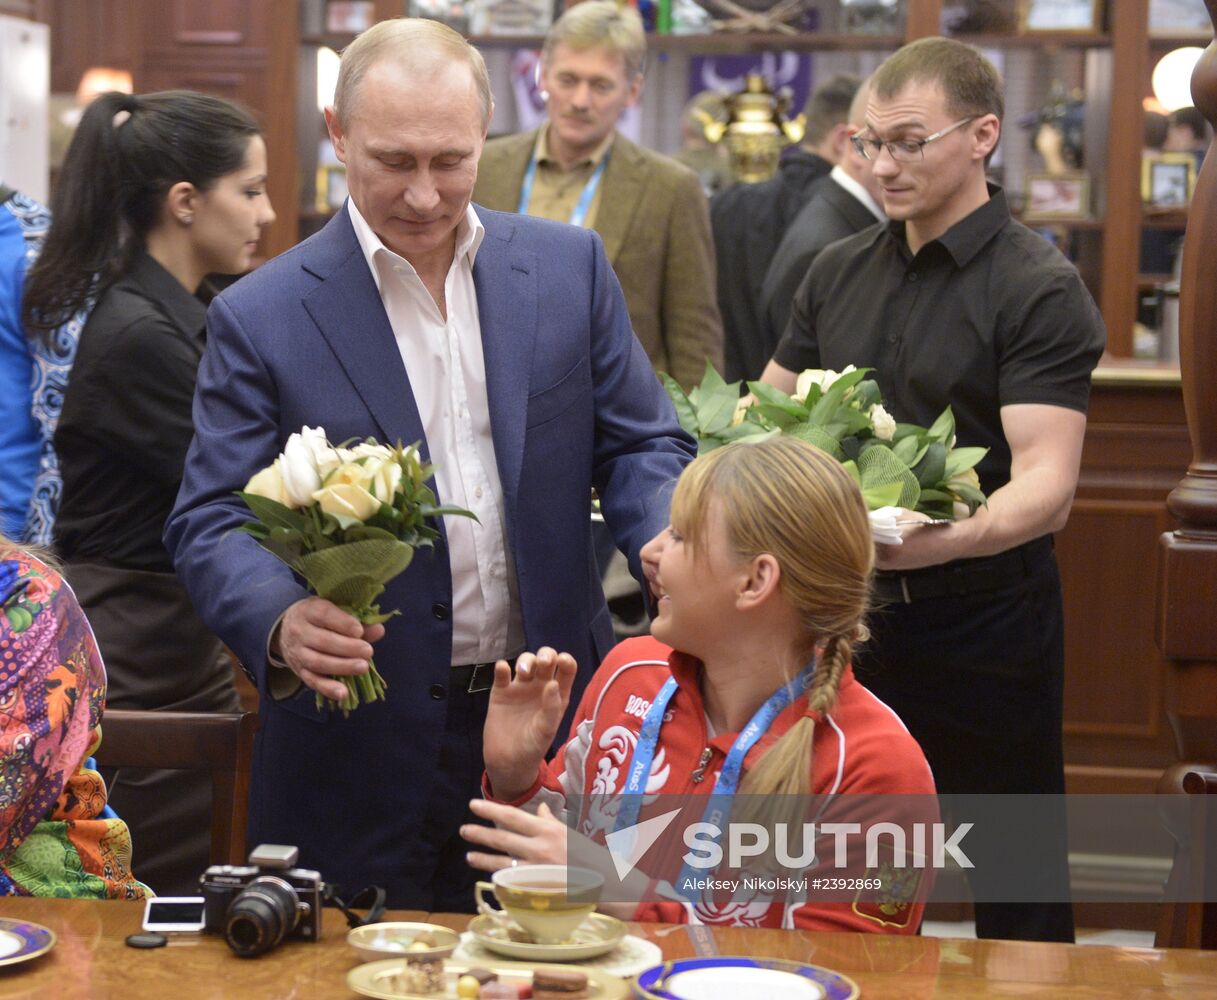 Vladimir Putin attends 2014 Winter Paralympics in Sochi